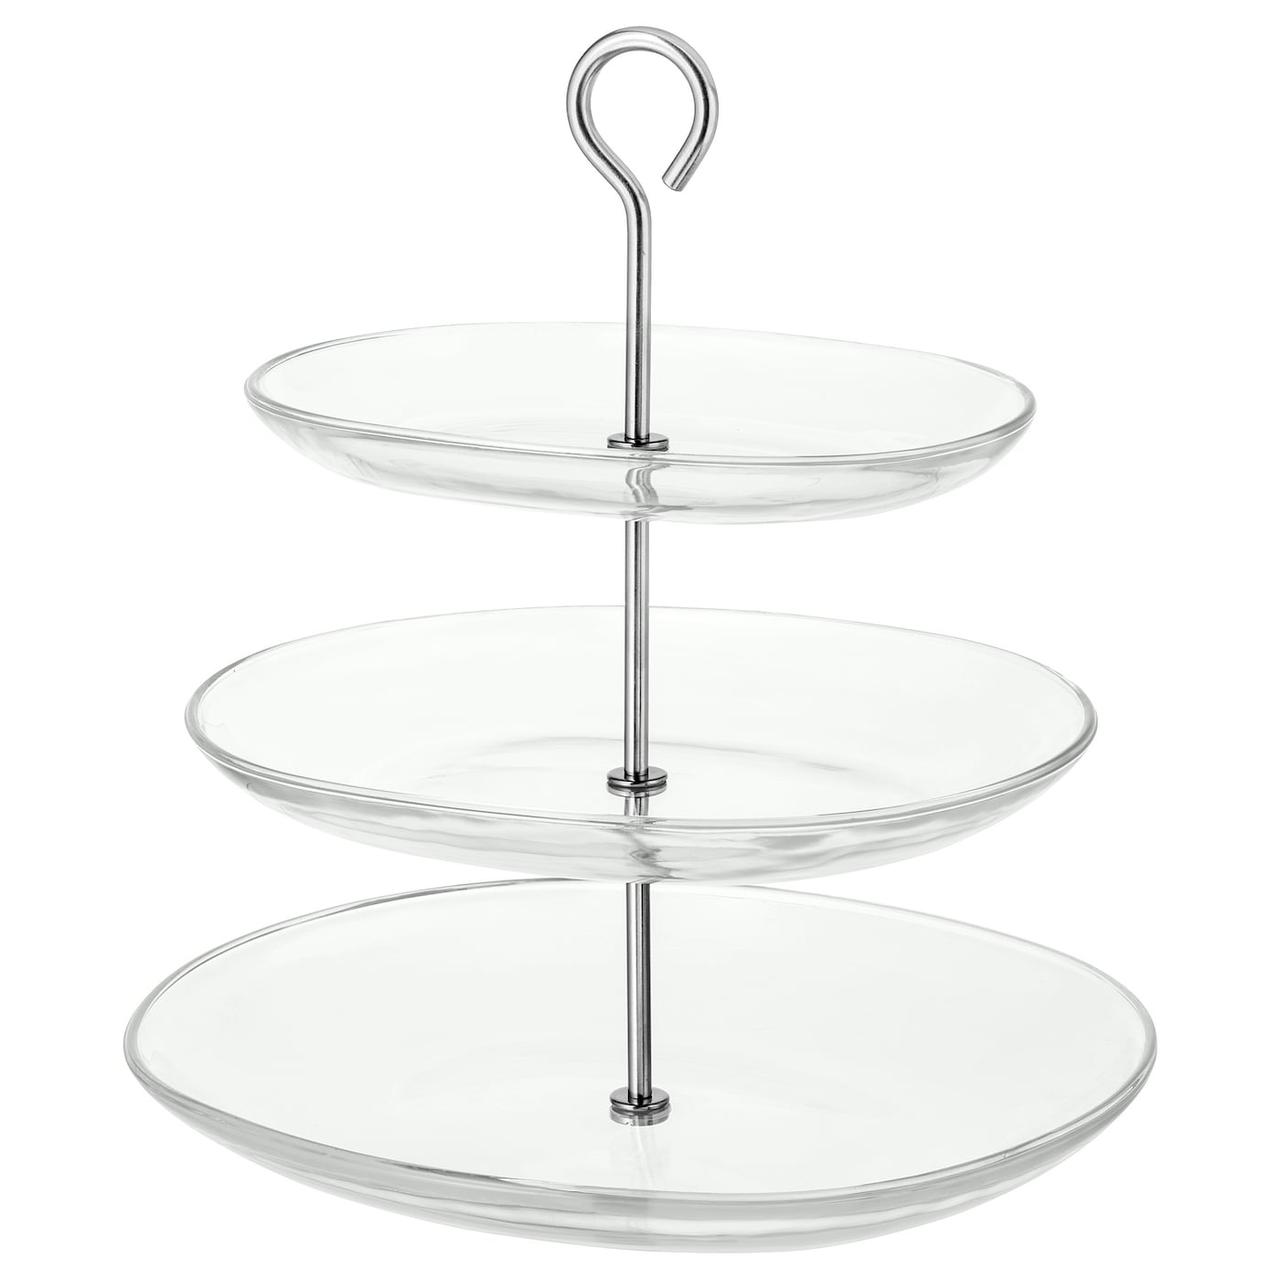 IKEA/ КВИТТЕРА Сервировочн подставка, 3 яруса, прозрачное стекло, нержавеющ сталь